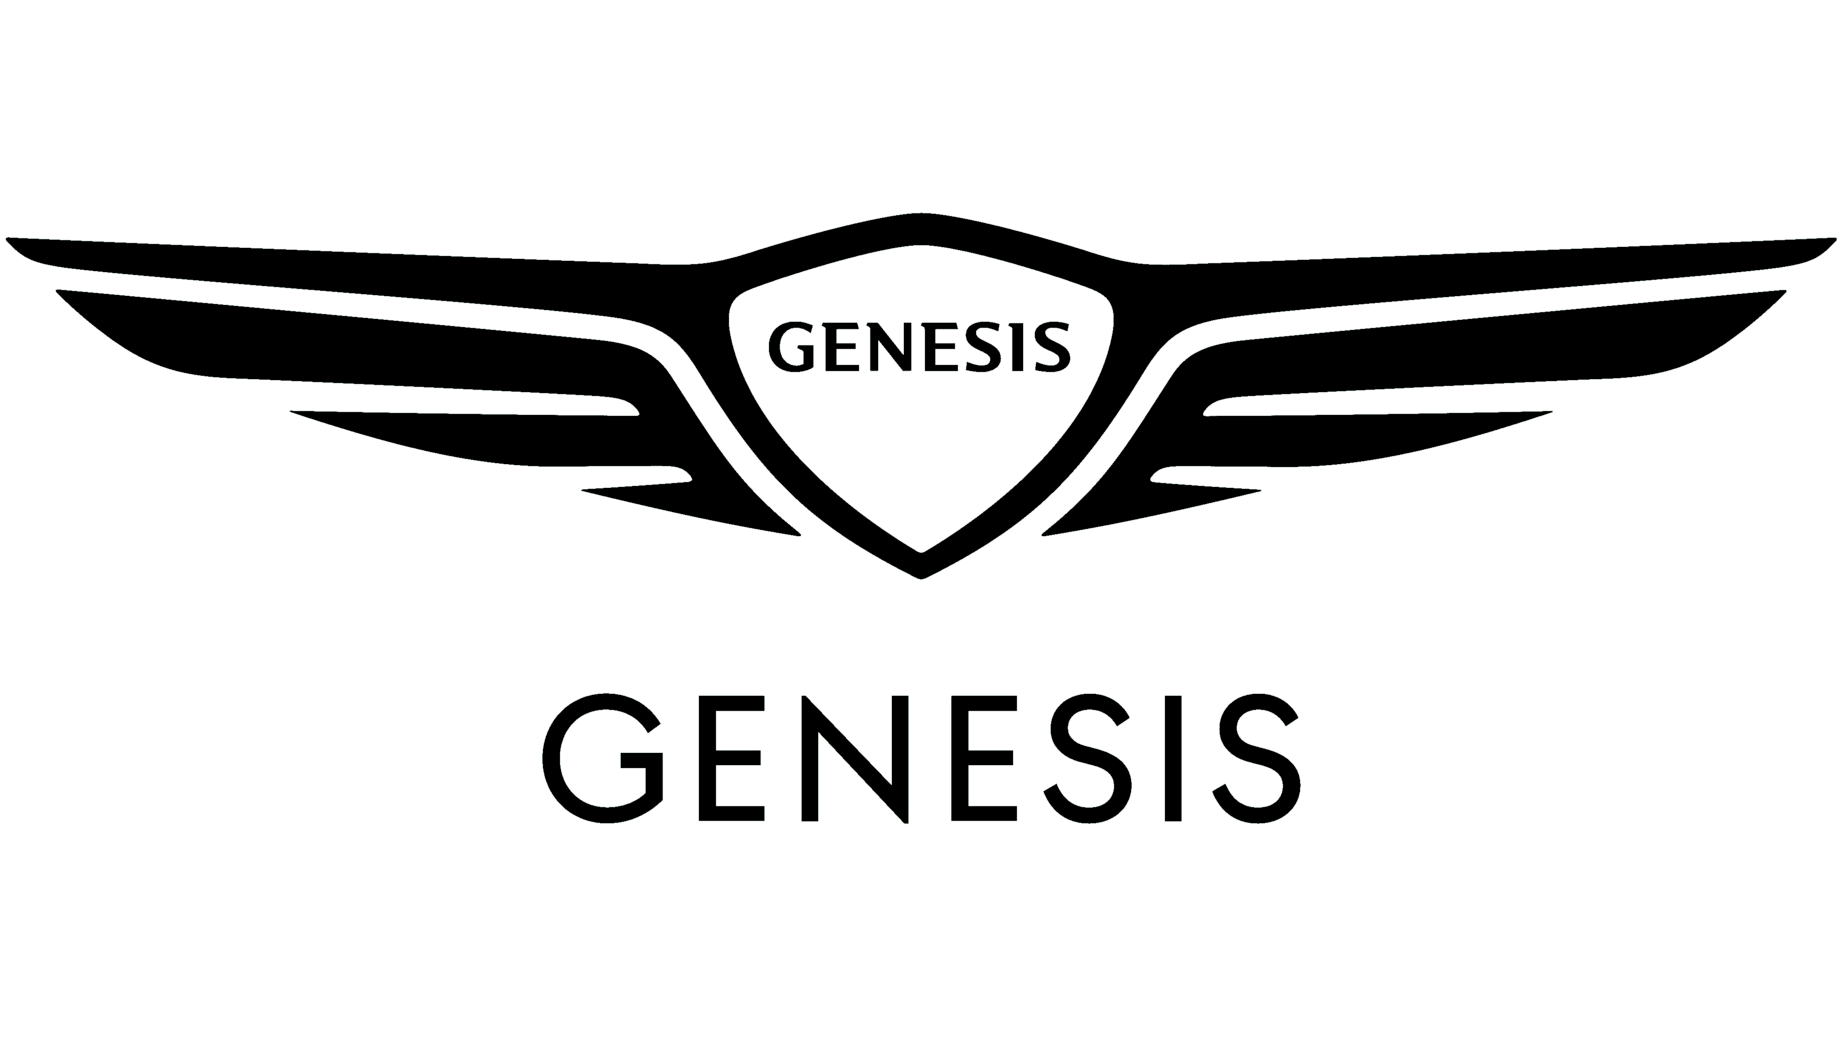 Genesis motors sign 2020 present